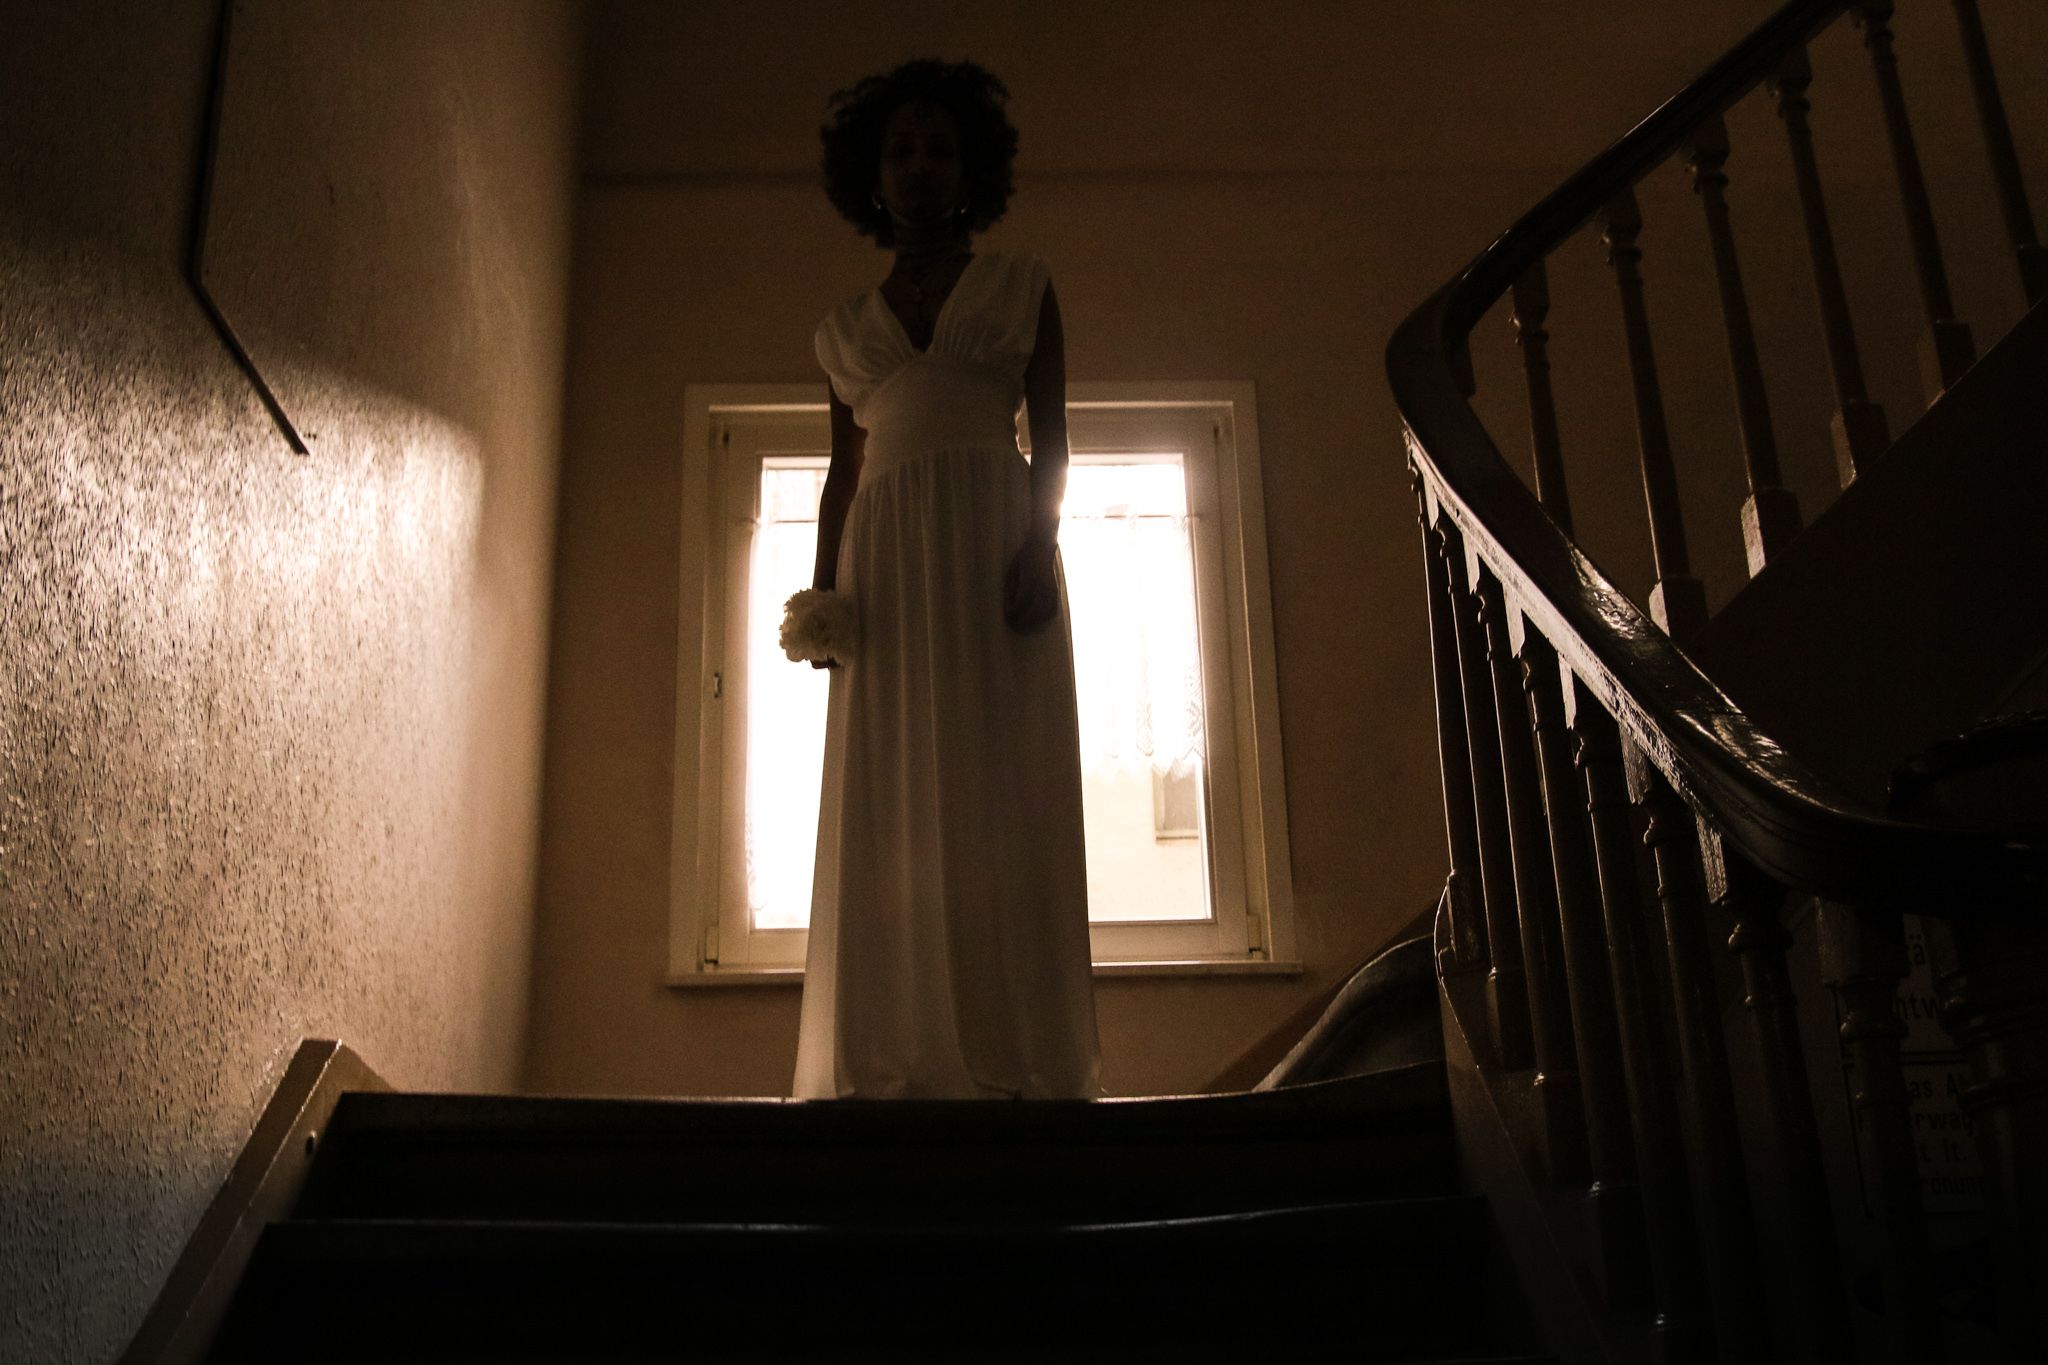 Nach unten gewandt, steht auf dem ersten Treppenabsatz eine weiß gekleidete Frau. Hinter ihr fällt leicht das Licht ins Treppenhaus. In ihrer rechten Hand hält sie eine weiße Blume. Ihr Körper ist der Kamera zugewandt.